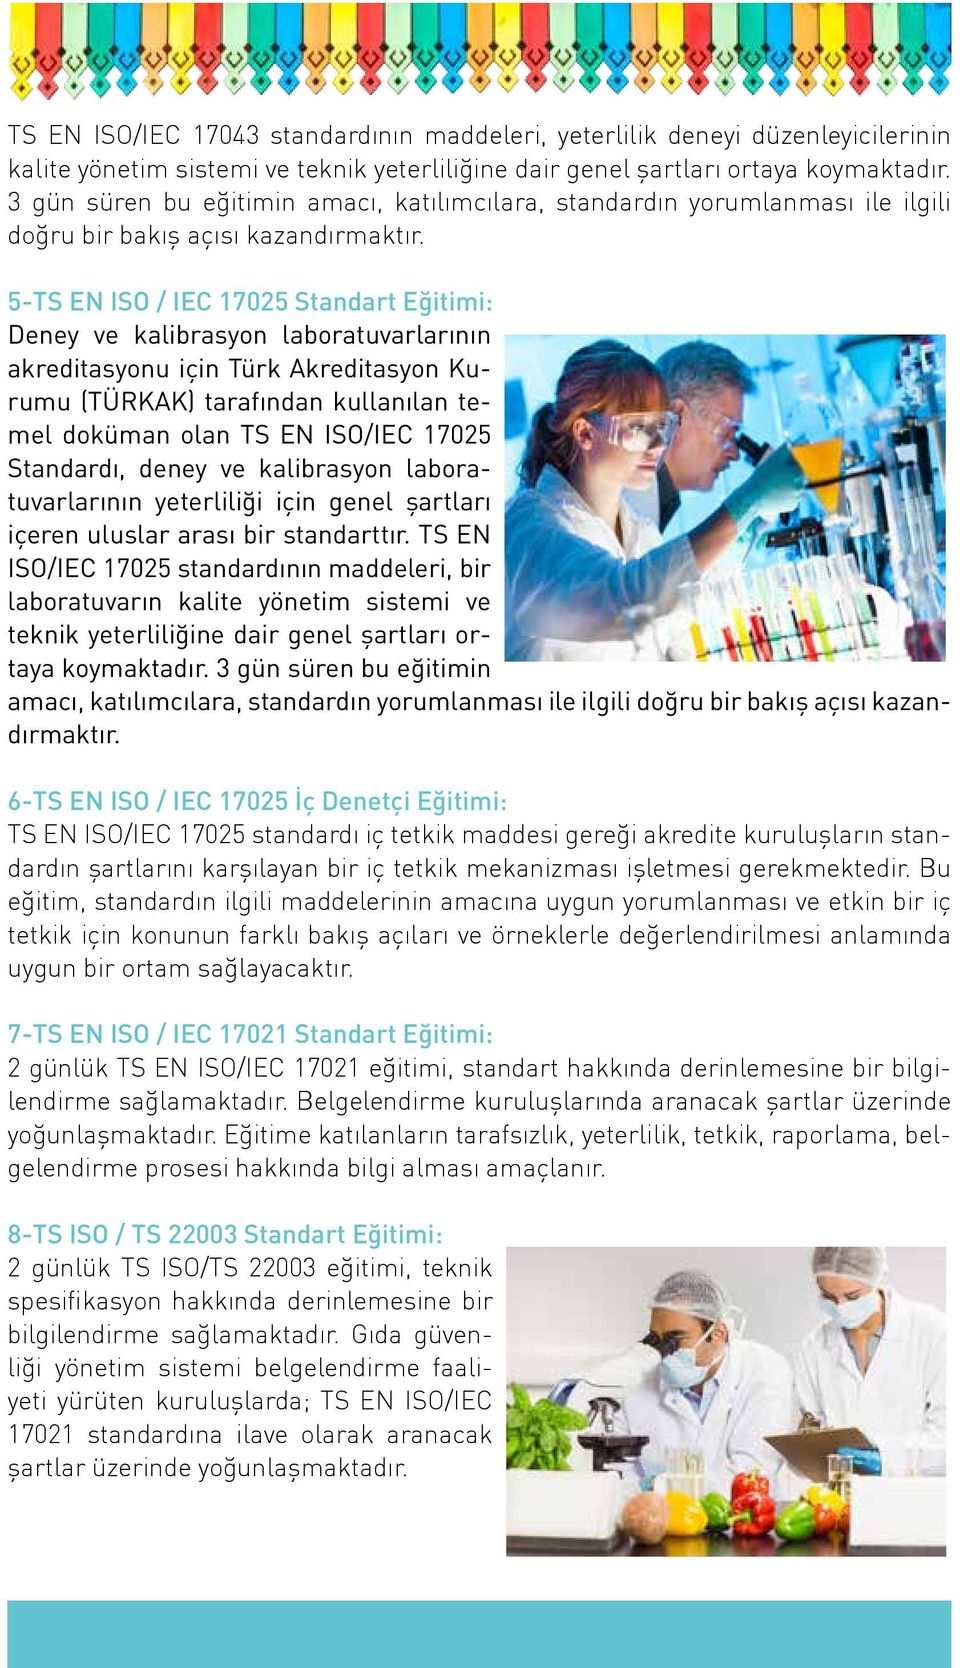 5-TS EN ISO / IEC 17025 Standart Eğitimi: Deney ve kalibrasyon laboratuvarlarının akreditasyonu için Türk Akreditasyon Kurumu (TÜRKAK) tarafından kullanılan temel doküman olan TS EN ISO/IEC 17025